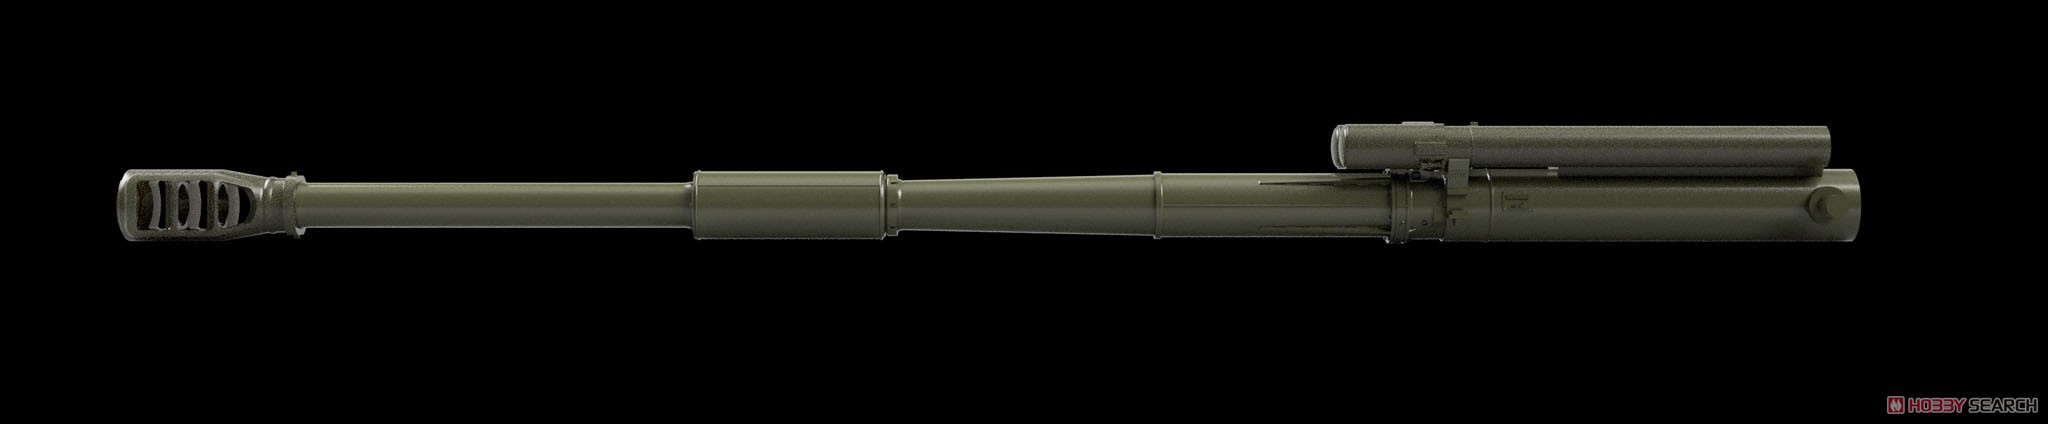 露・2S19-Sムスタ自走砲・152mm2S64砲身 (プラモデル) その他の画像2